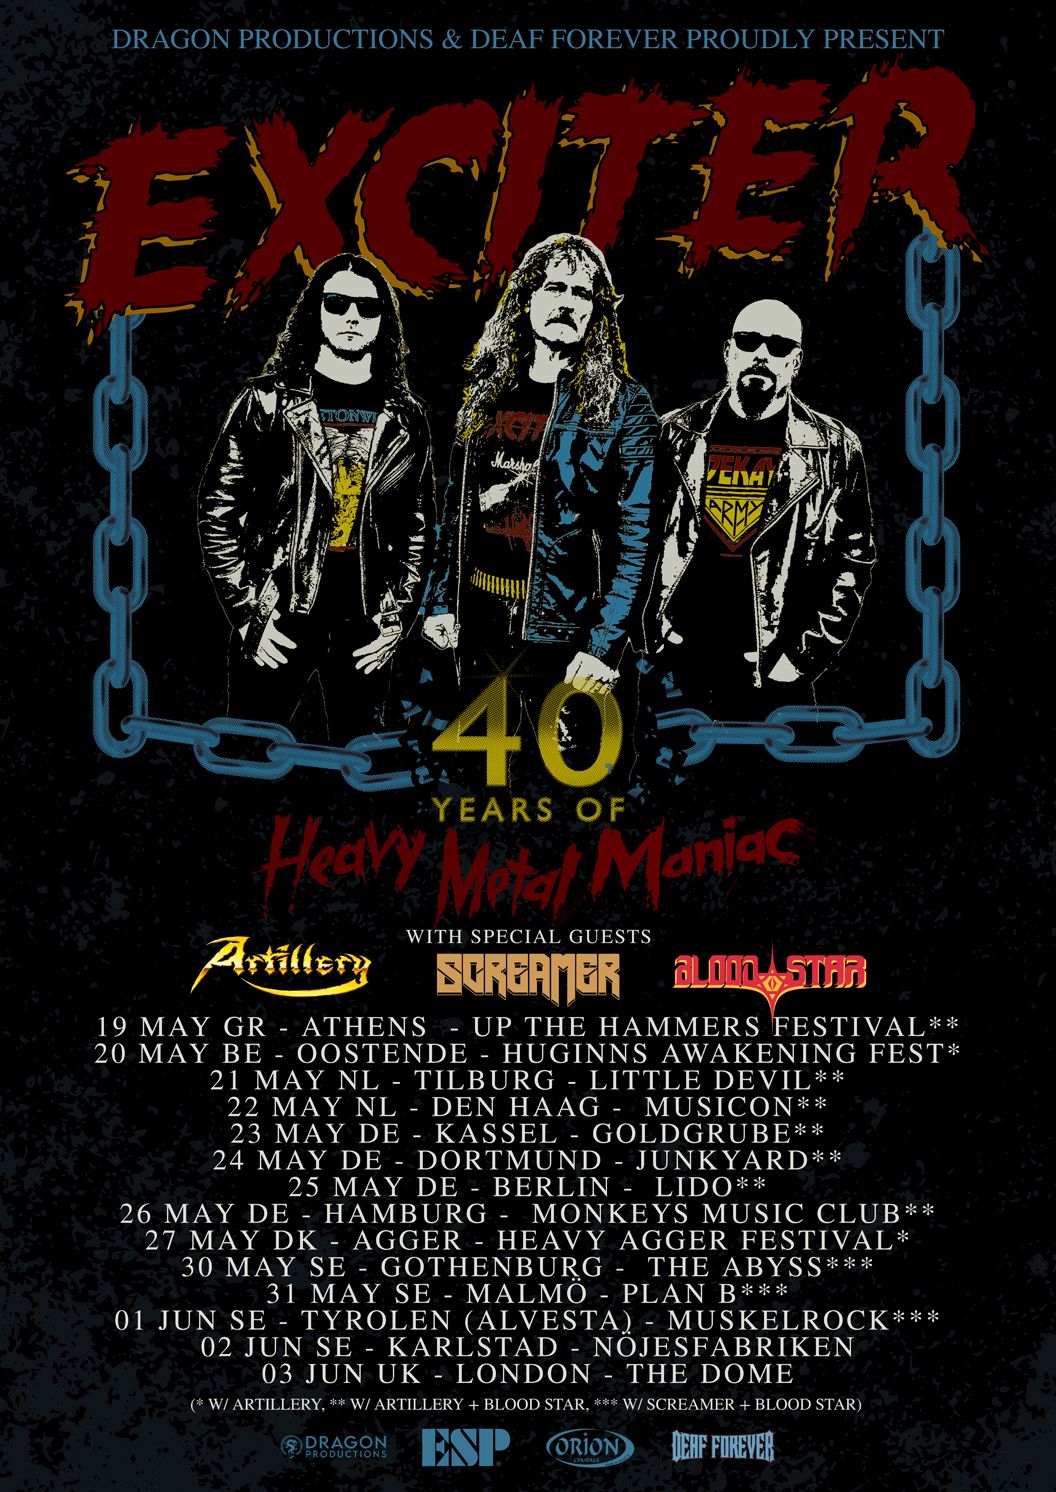 Europatour zum 40-jährigen Jubiläum von "Heavy Metal Maniac" angekündigt